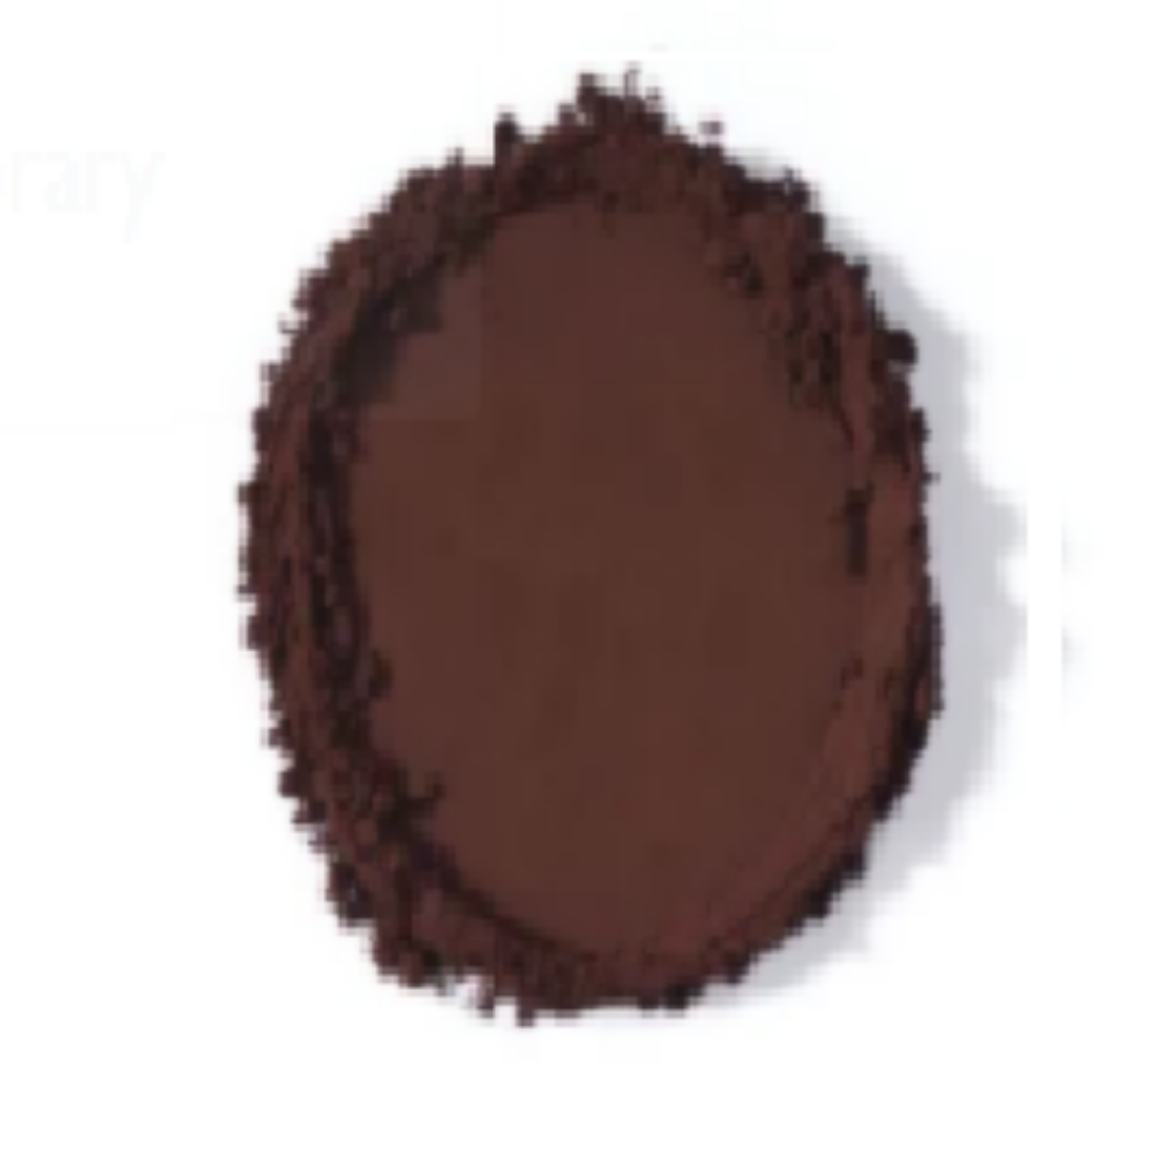 Picture of 1KG BLACK COCOA POWDER (10-12% FAT)